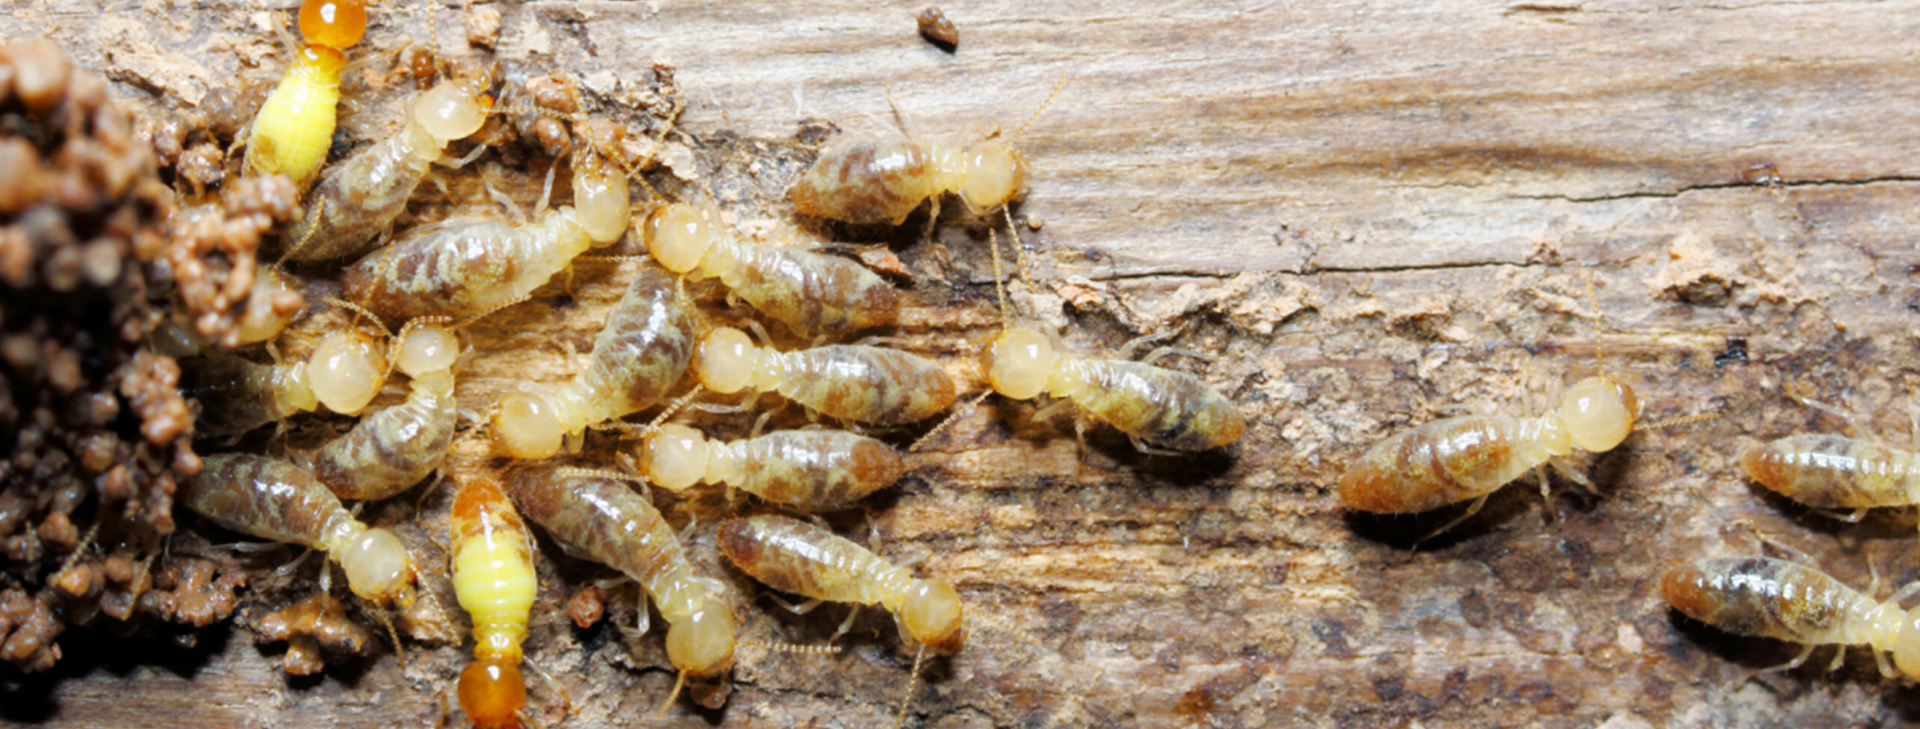 Termite Extermination - Fremantle Pest Control